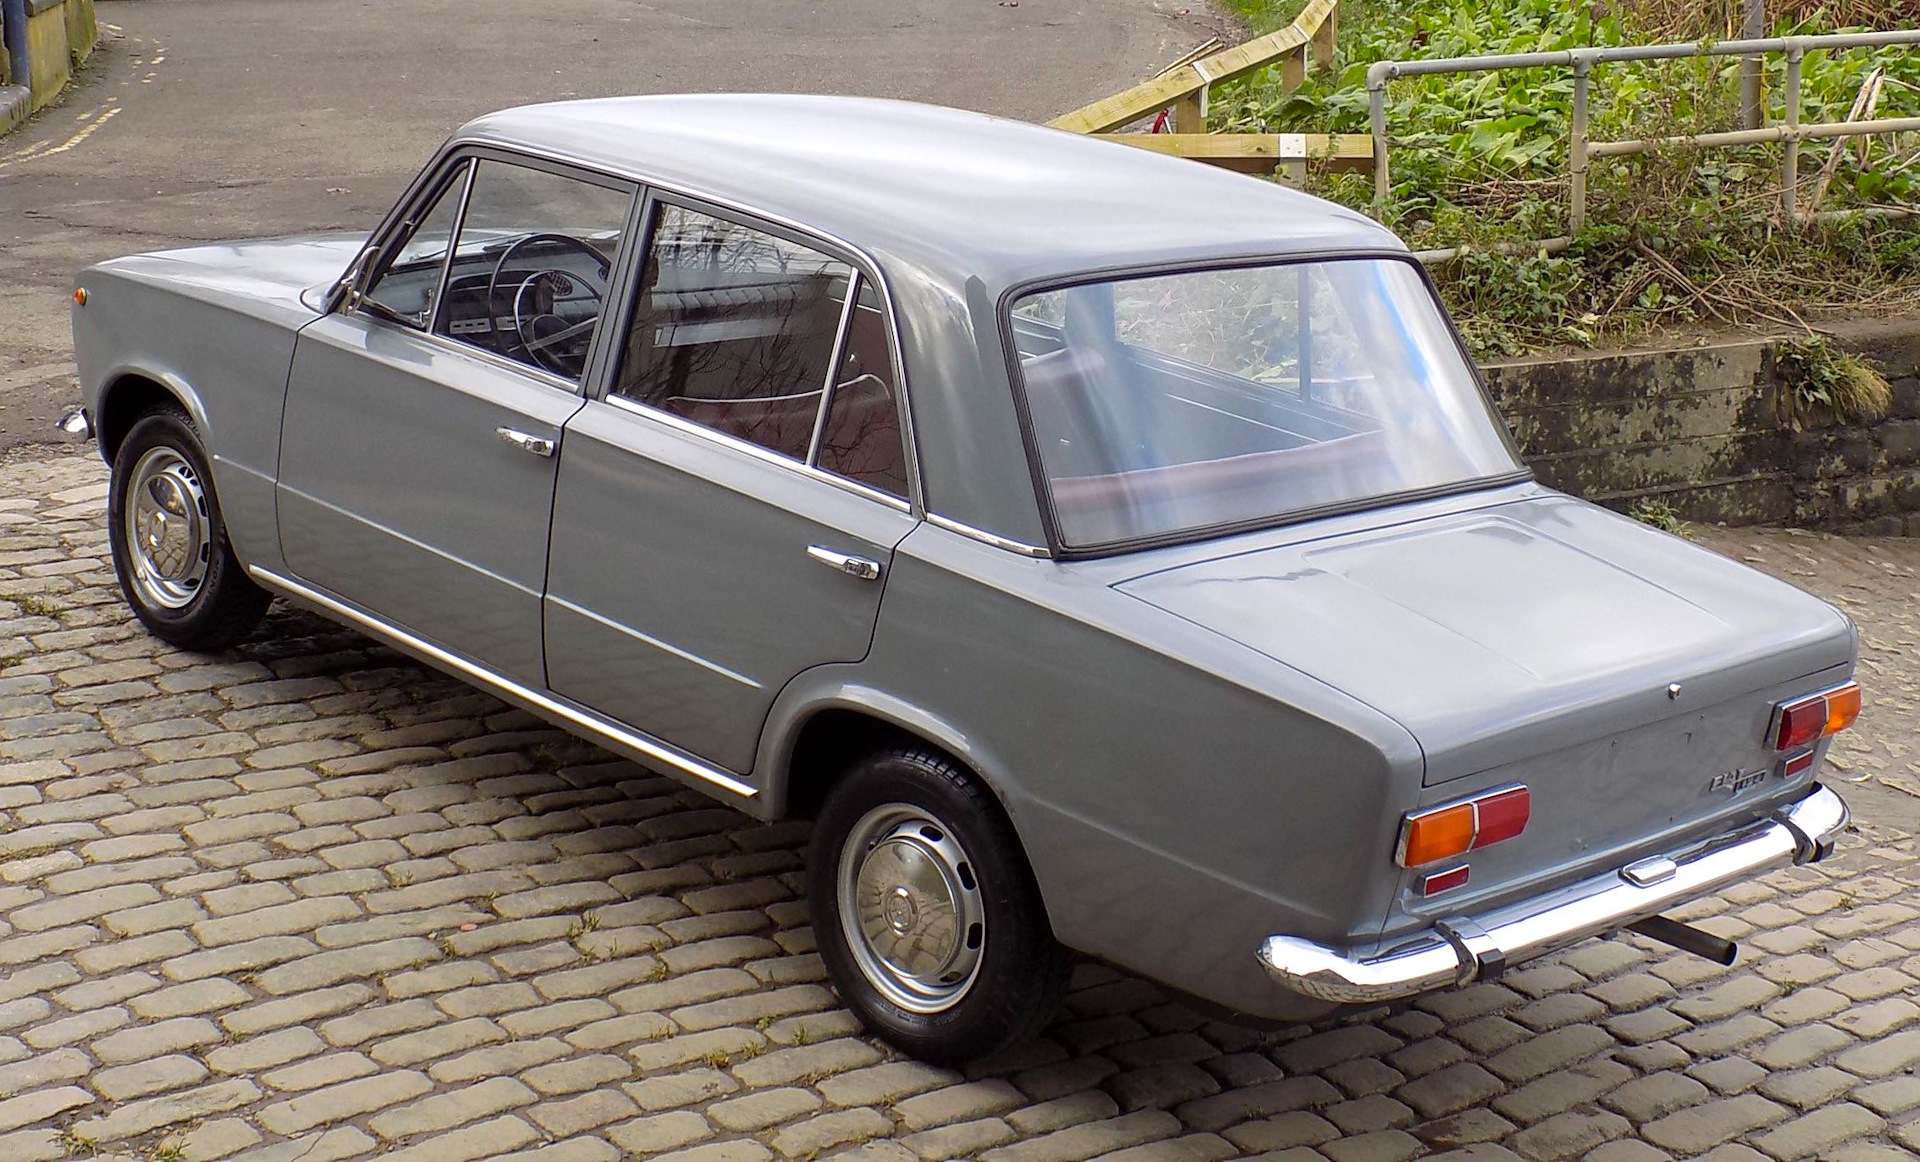 Год выпуска фиат. Фиат 124 Berlina. Фиат 124 1968. Жигули Фиат 124. Fiat 124 1970.